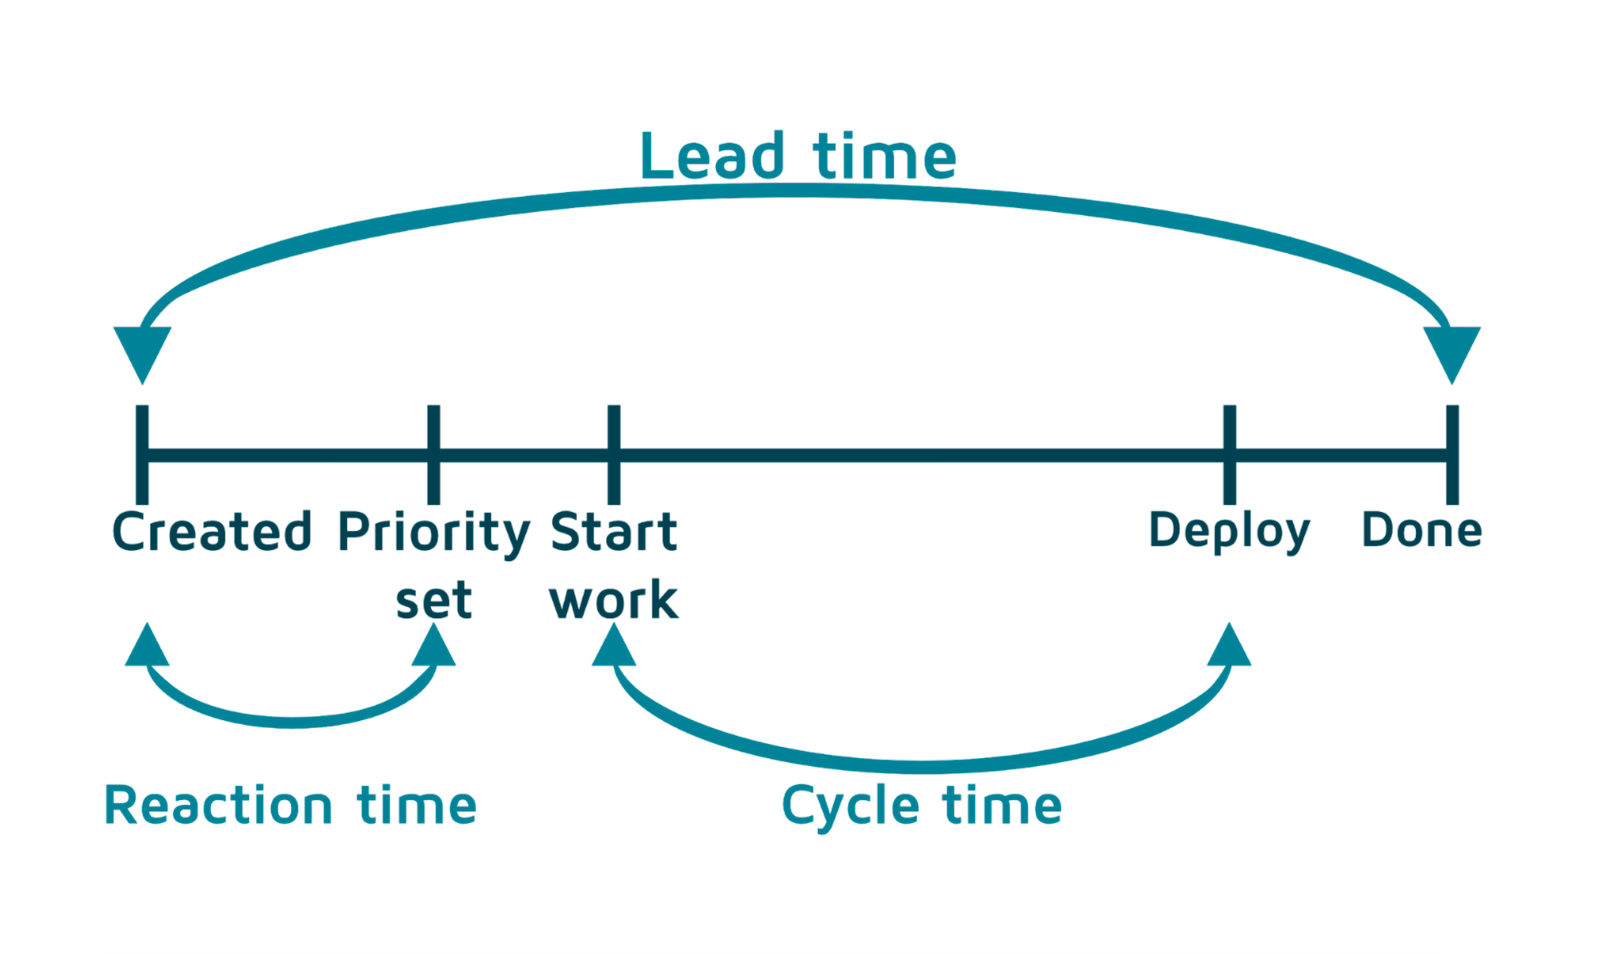 Канбан lead time. Lead time Cycle time. Метрики Канбан. Диаграмма Канбан.